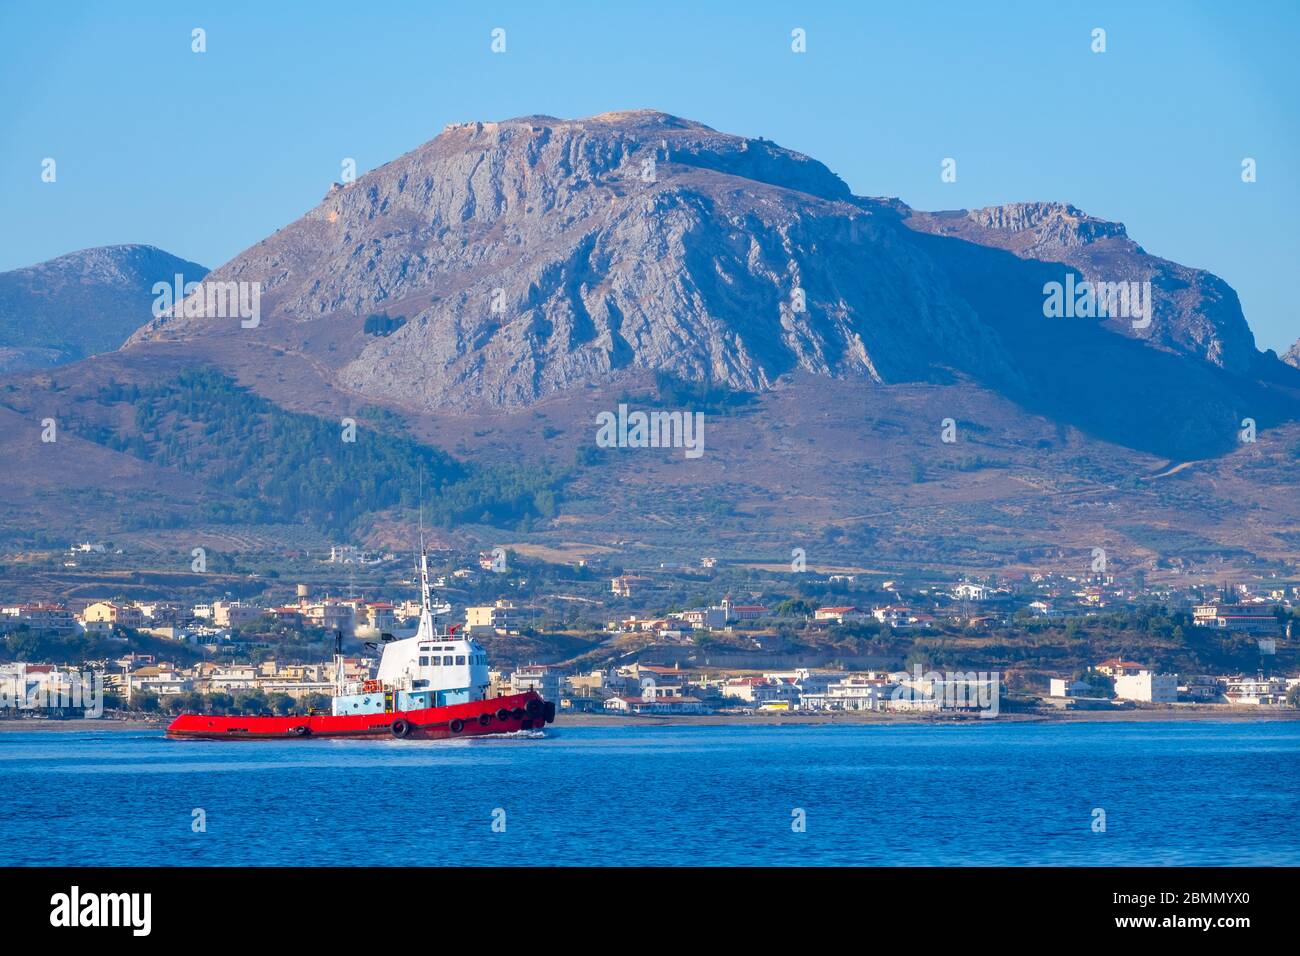 Giornata estiva di sole nel golfo di Corinto. Un rimorchiatore sullo sfondo di una piccola cittadina sulla costa montana. Vista dall'acqua Foto Stock